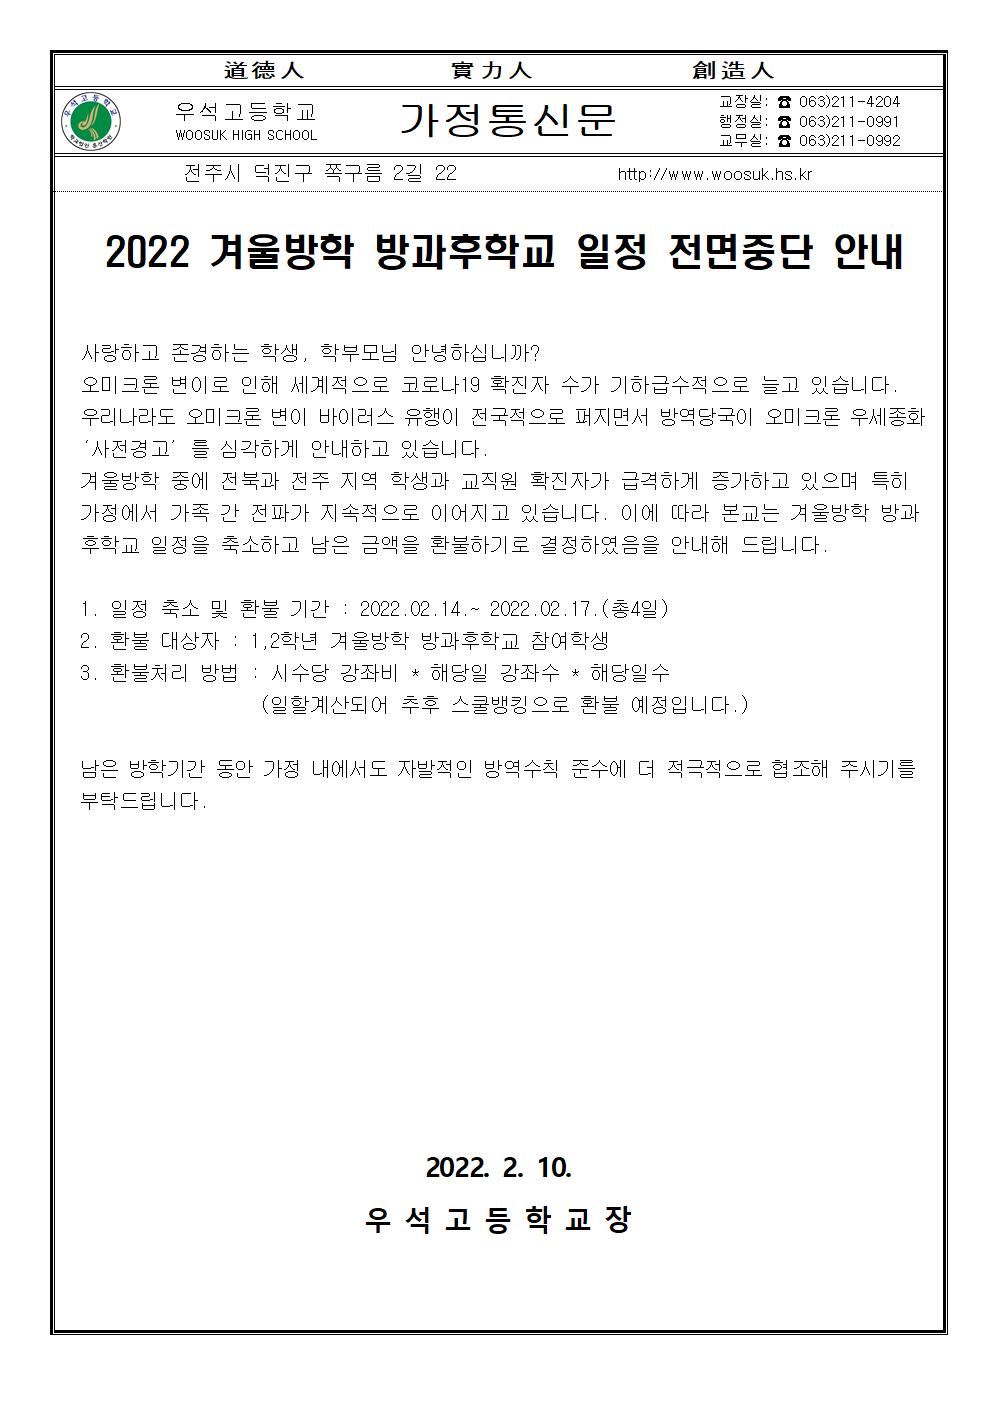 2022 겨울방학 방과후학교 일정중단 가정통신문001